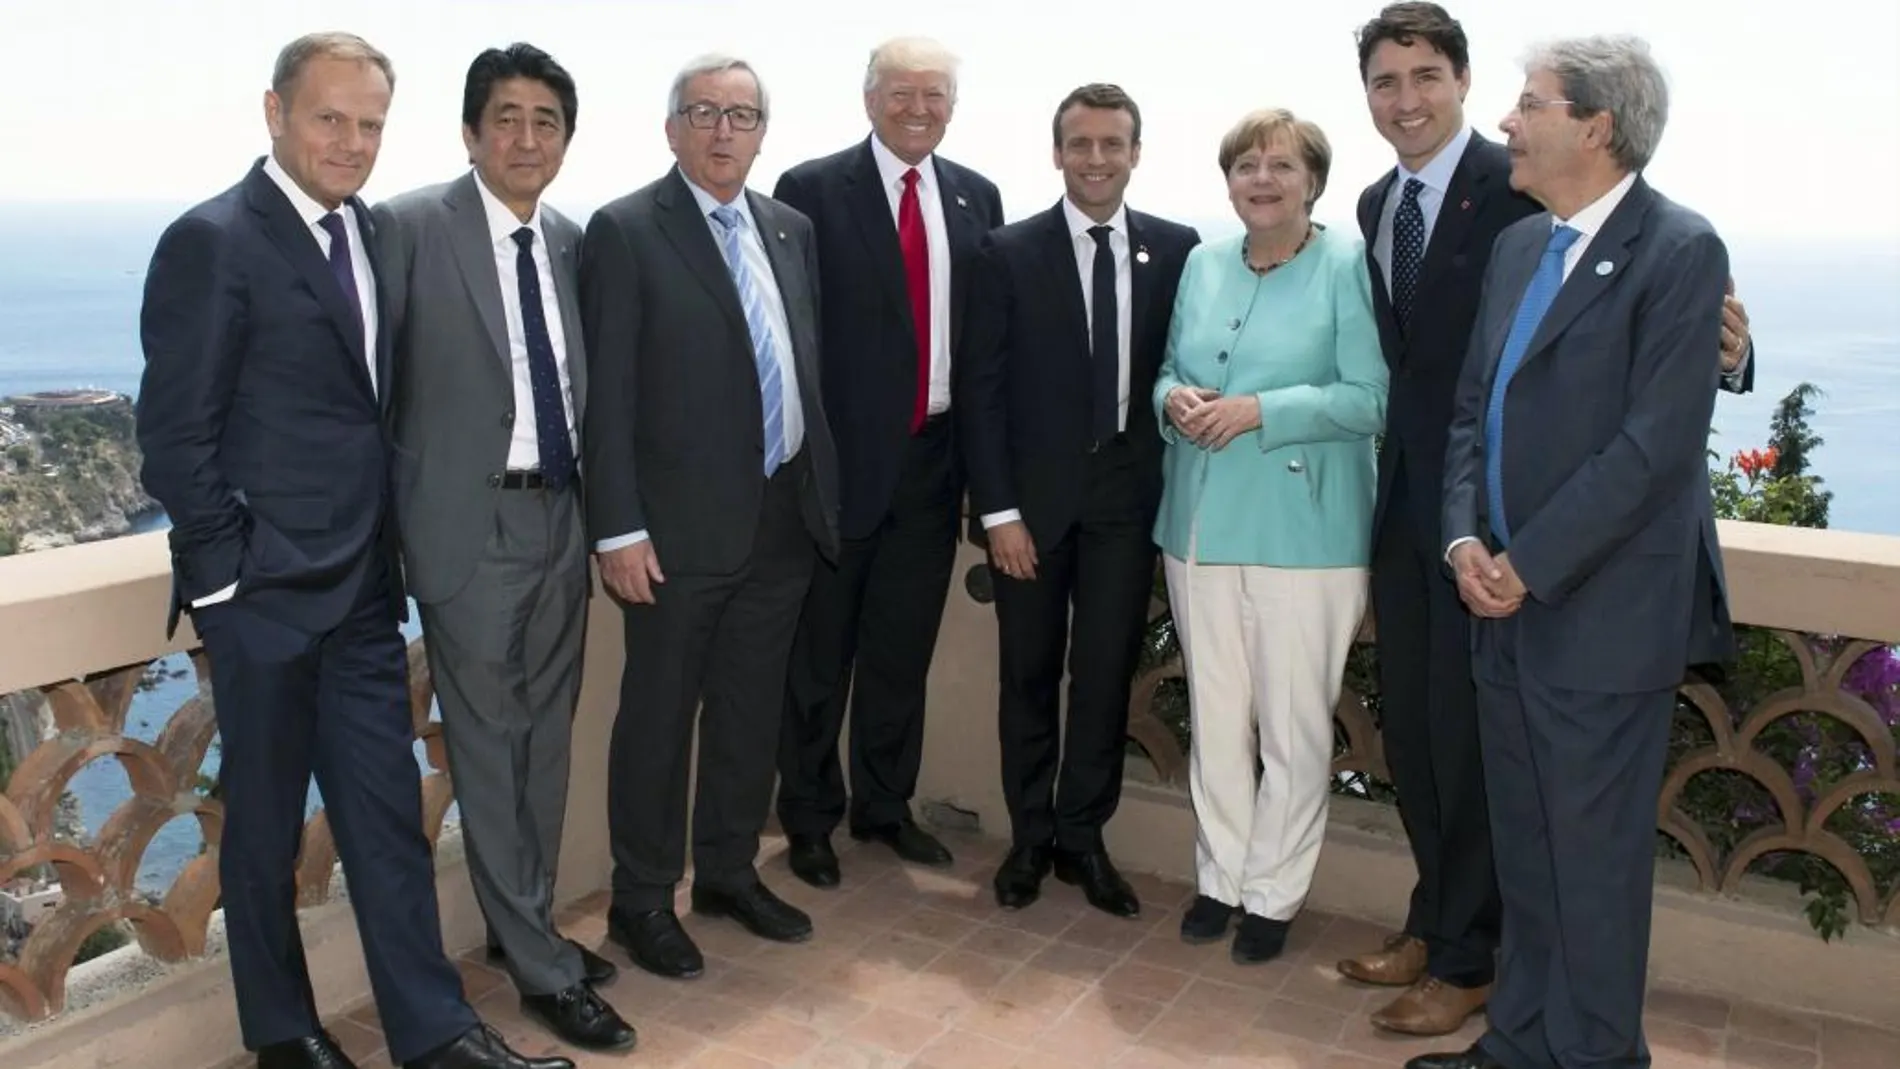 De izquierda a derecha, el presidente del Consejo Europeo, Donald Tusk; el primer ministro japonés Shinzo Abe; el presidente de la Comisión Europea, Jean-Claude Juncker, el presidente de EE UU, Donald Trump, el presidente galo Emmanuel Macron, la canciller alemana Angela Merkel; el primer ministro de Canada, Justin Trudeau, y el primer ministro italiano Paolo Gentilon